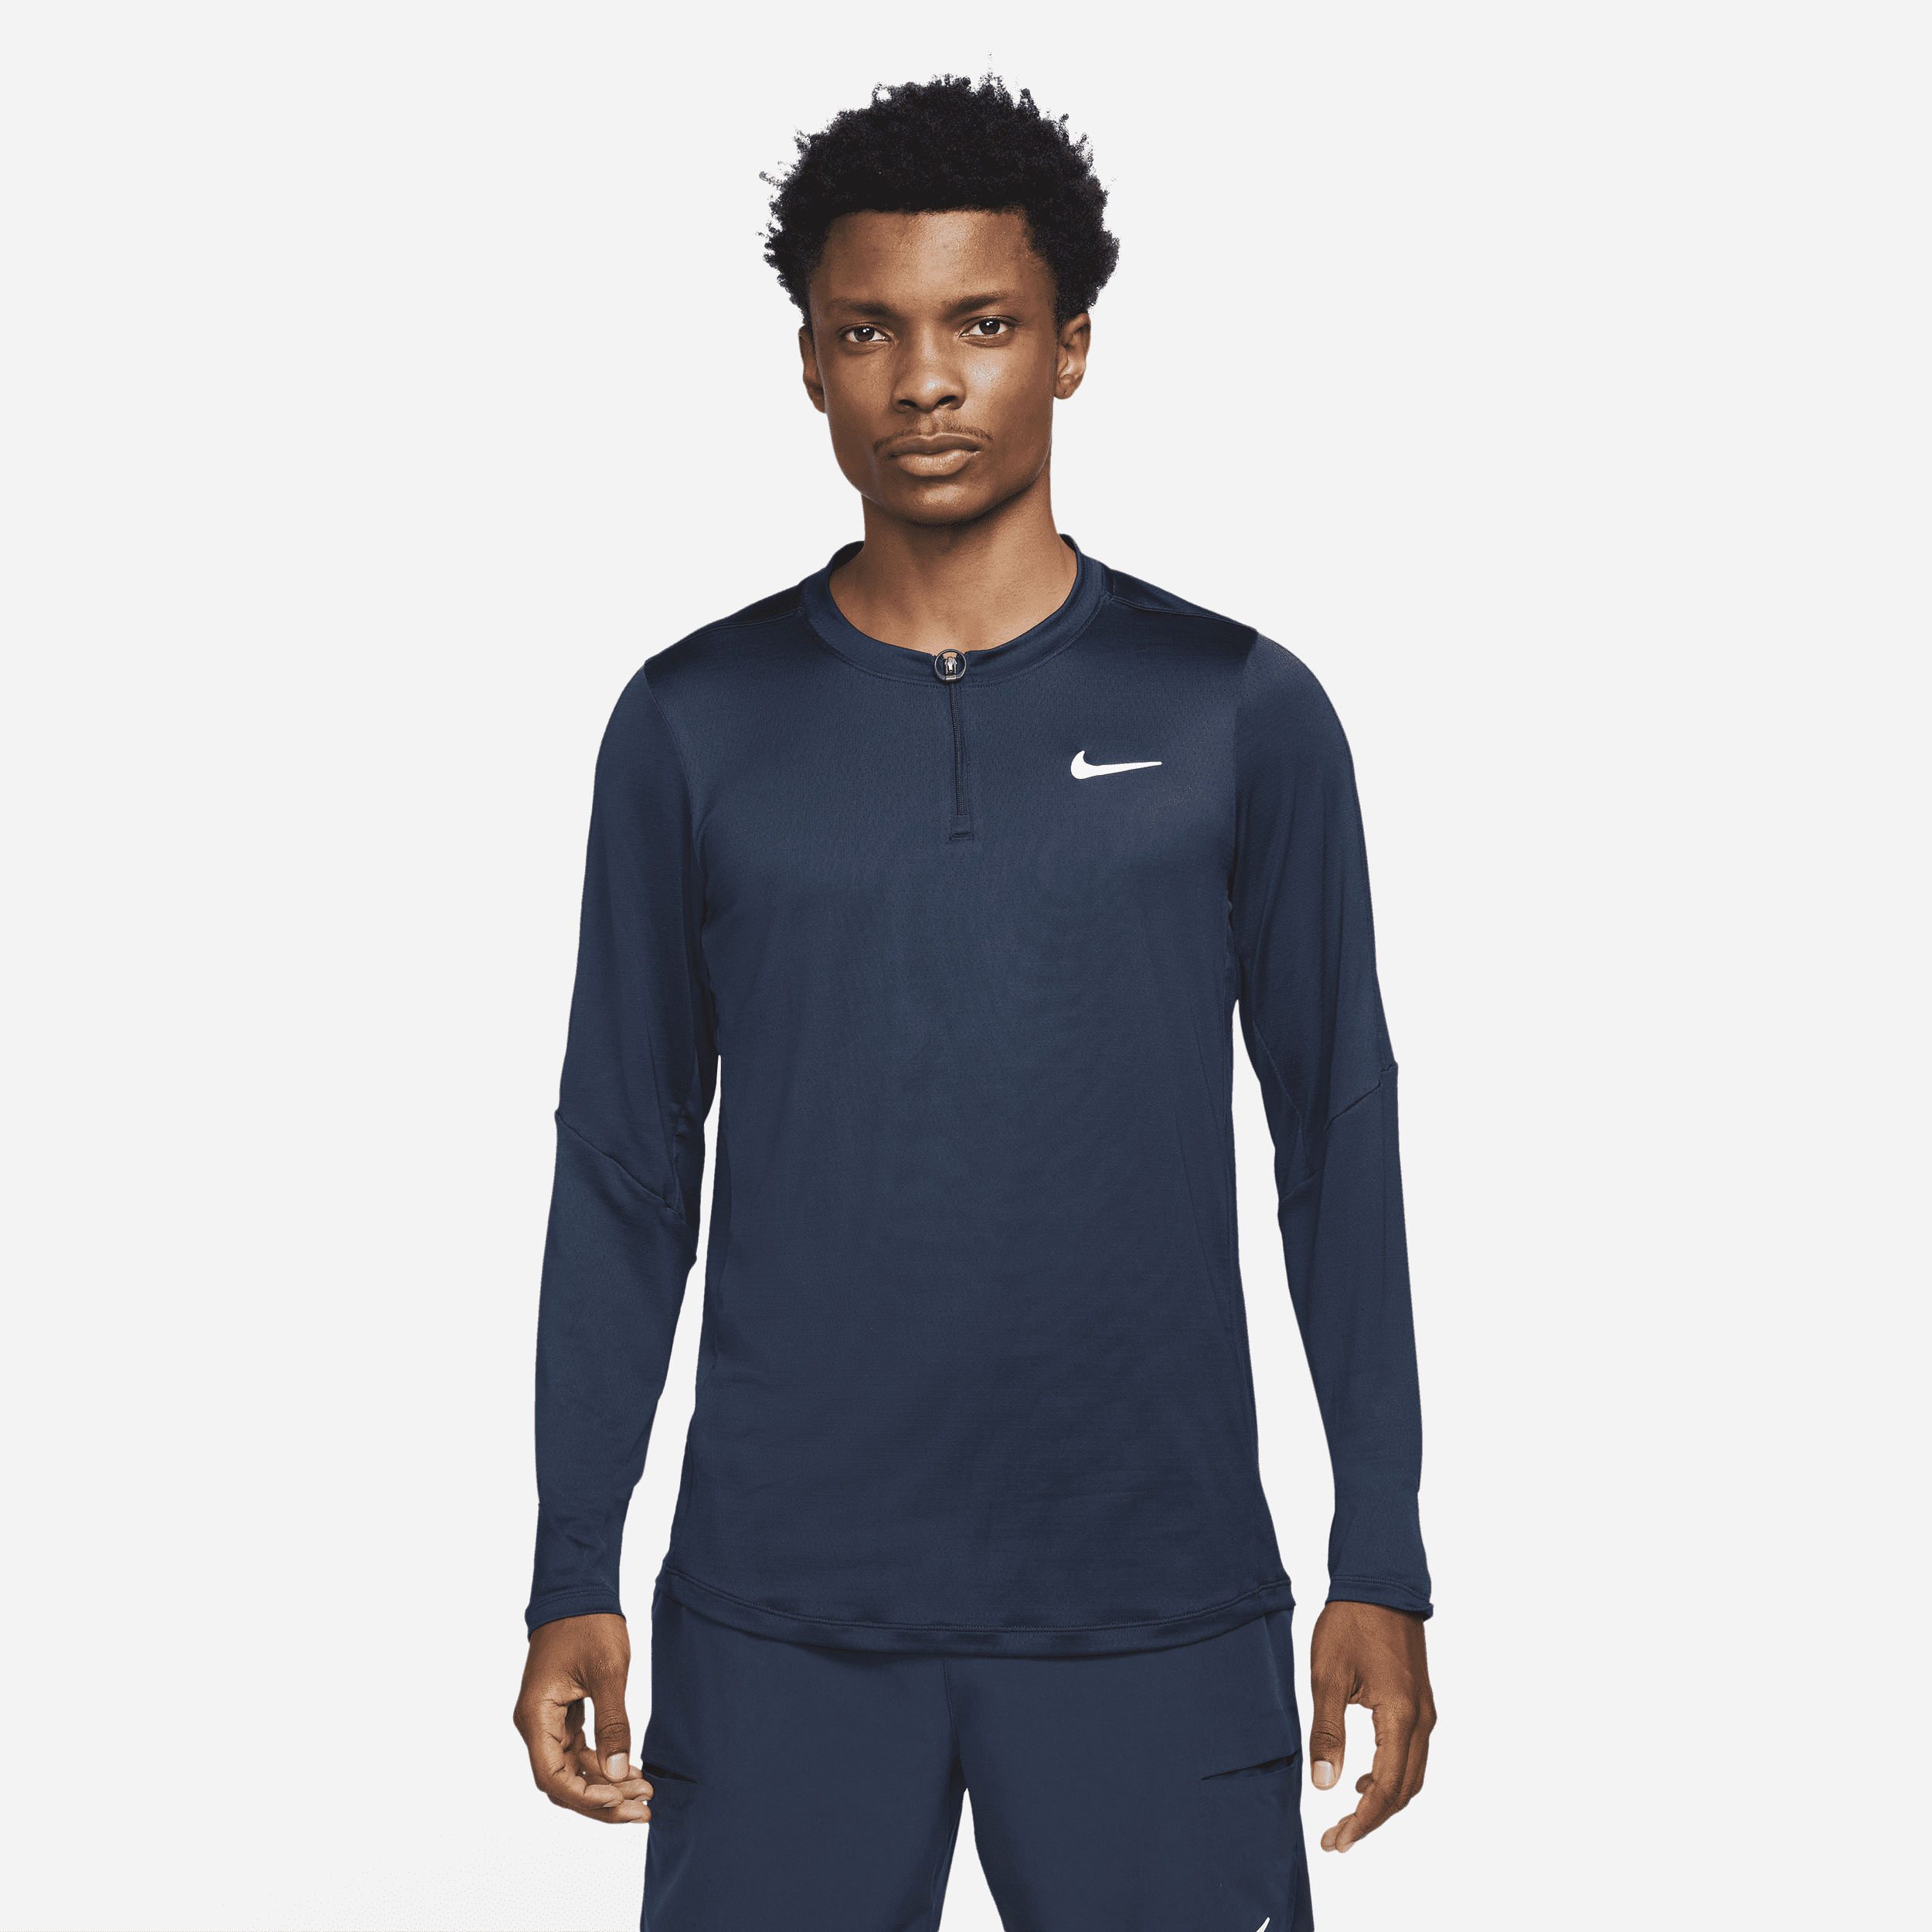 NikeCourt Dri-FIT Advantage-tennistrøje med lynlås i 1/2 længde til mænd - blå